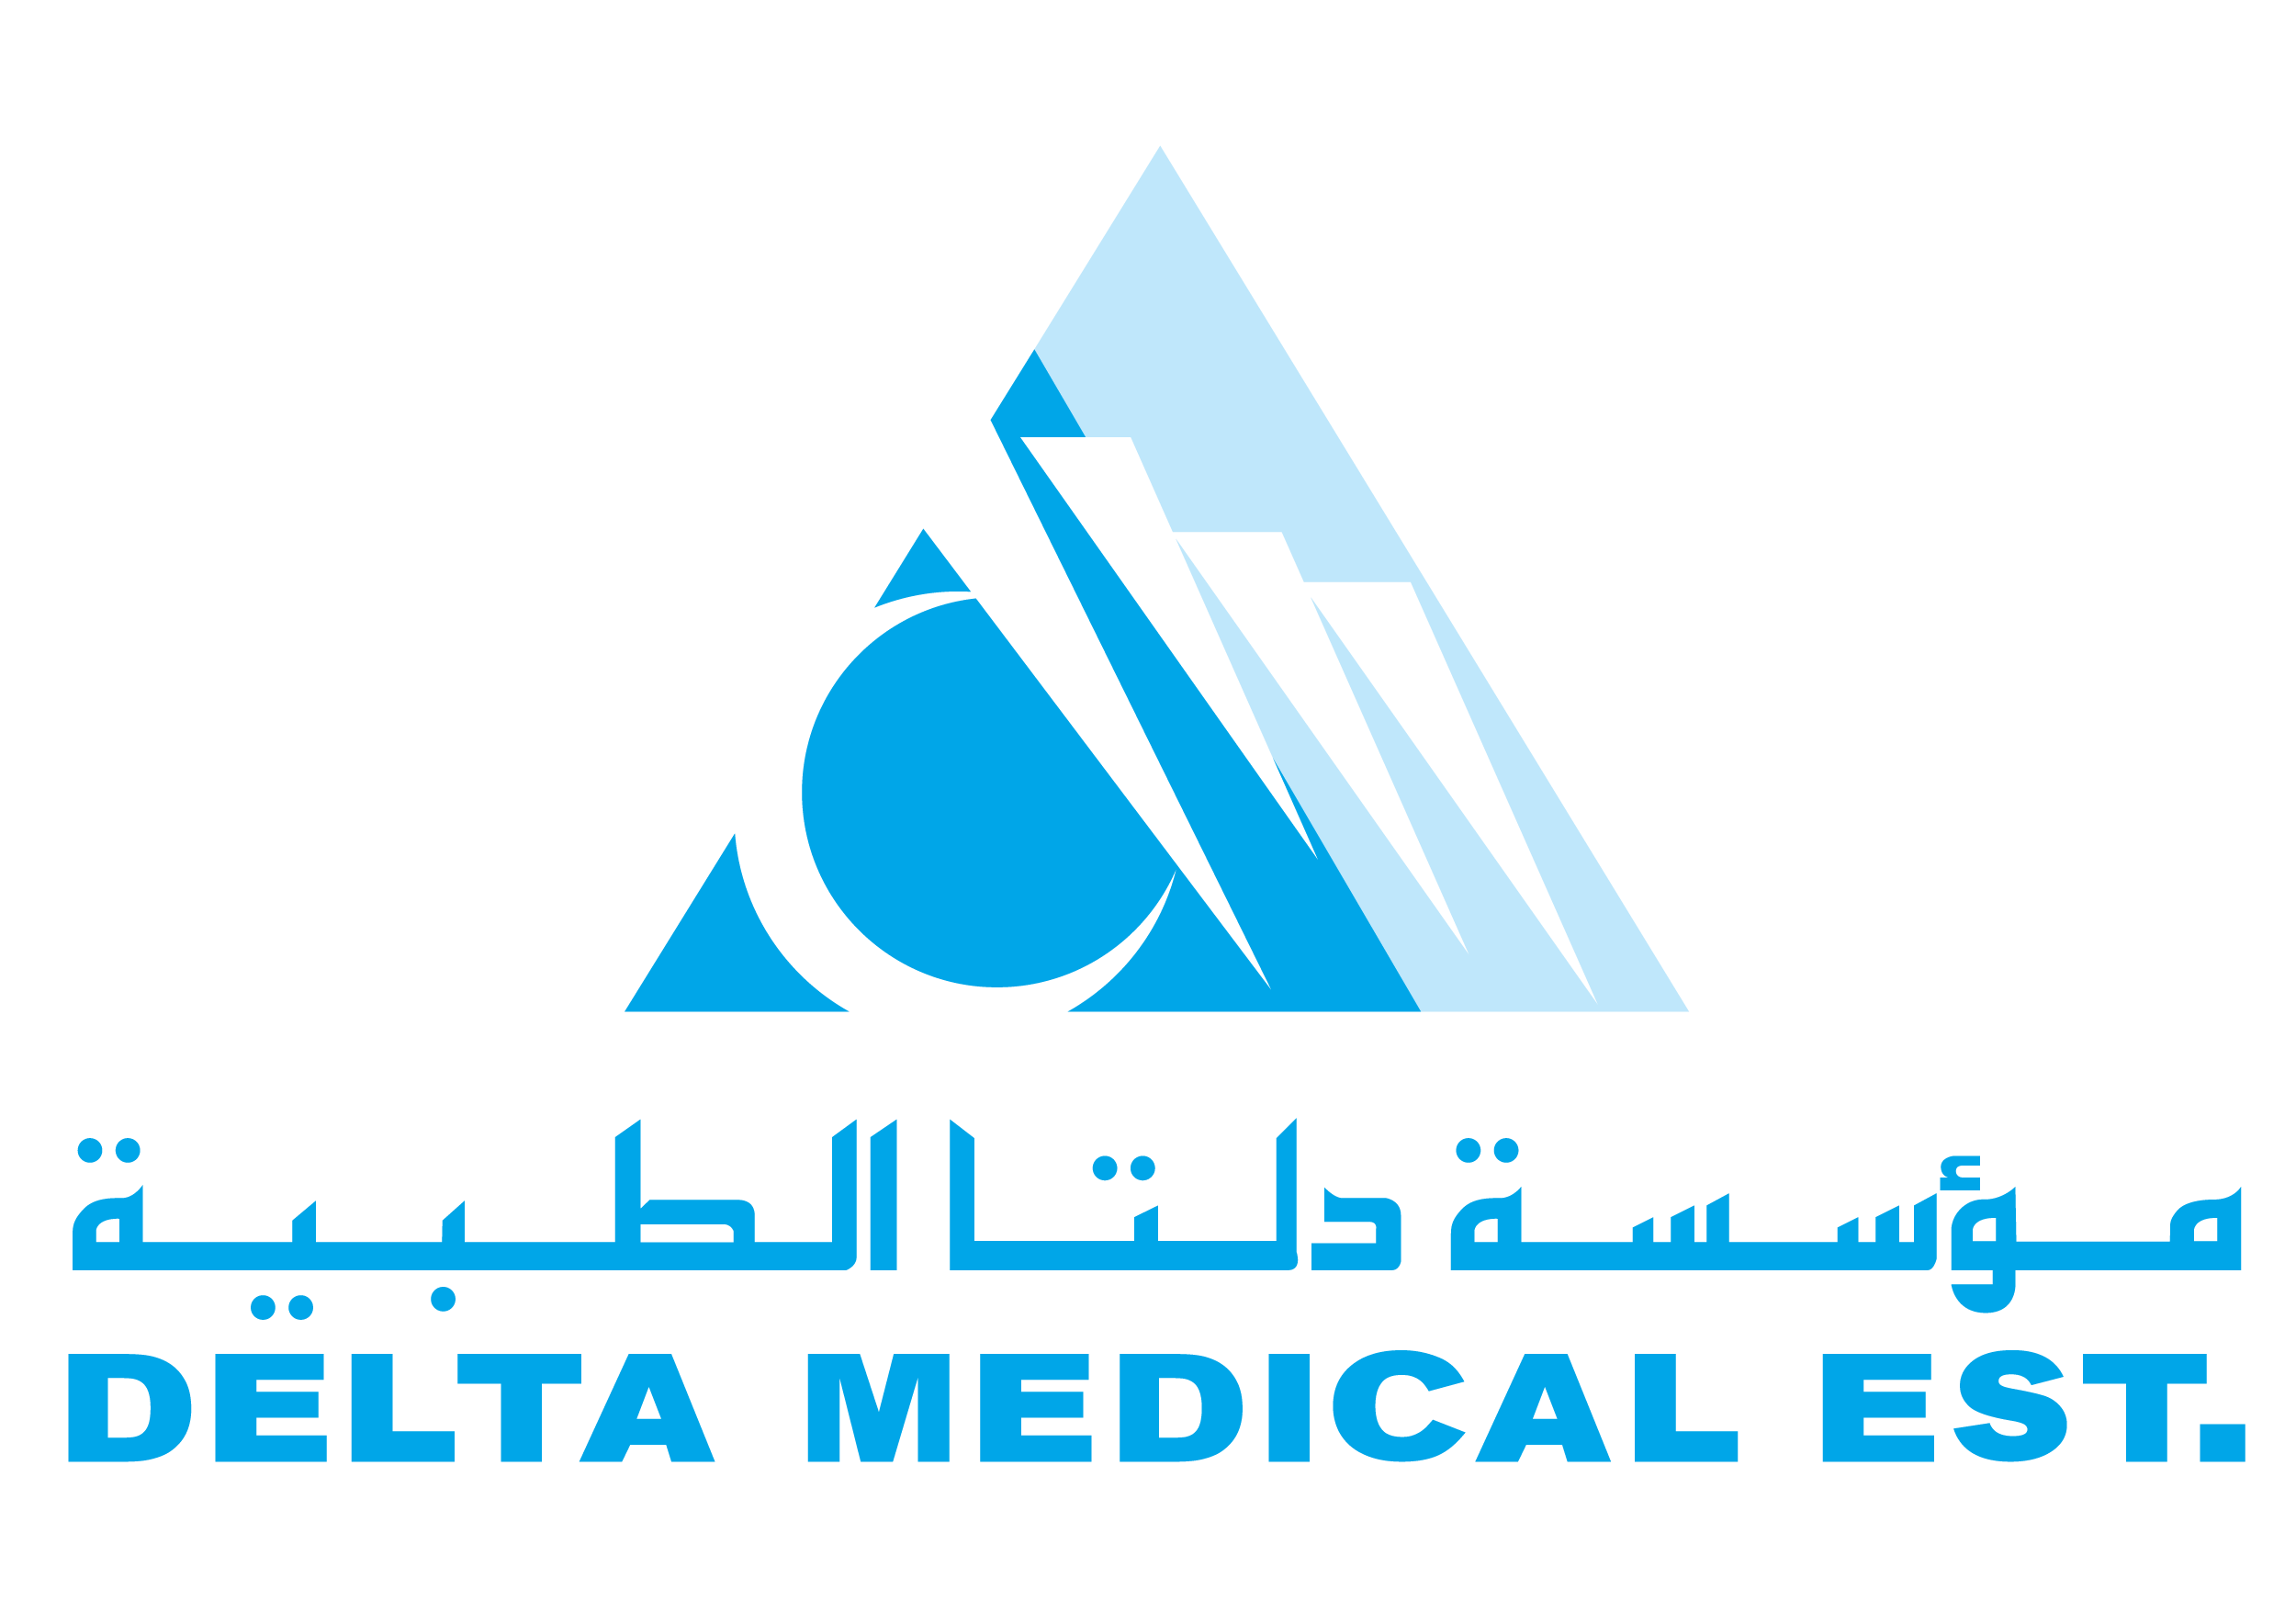 Delta Medical Est